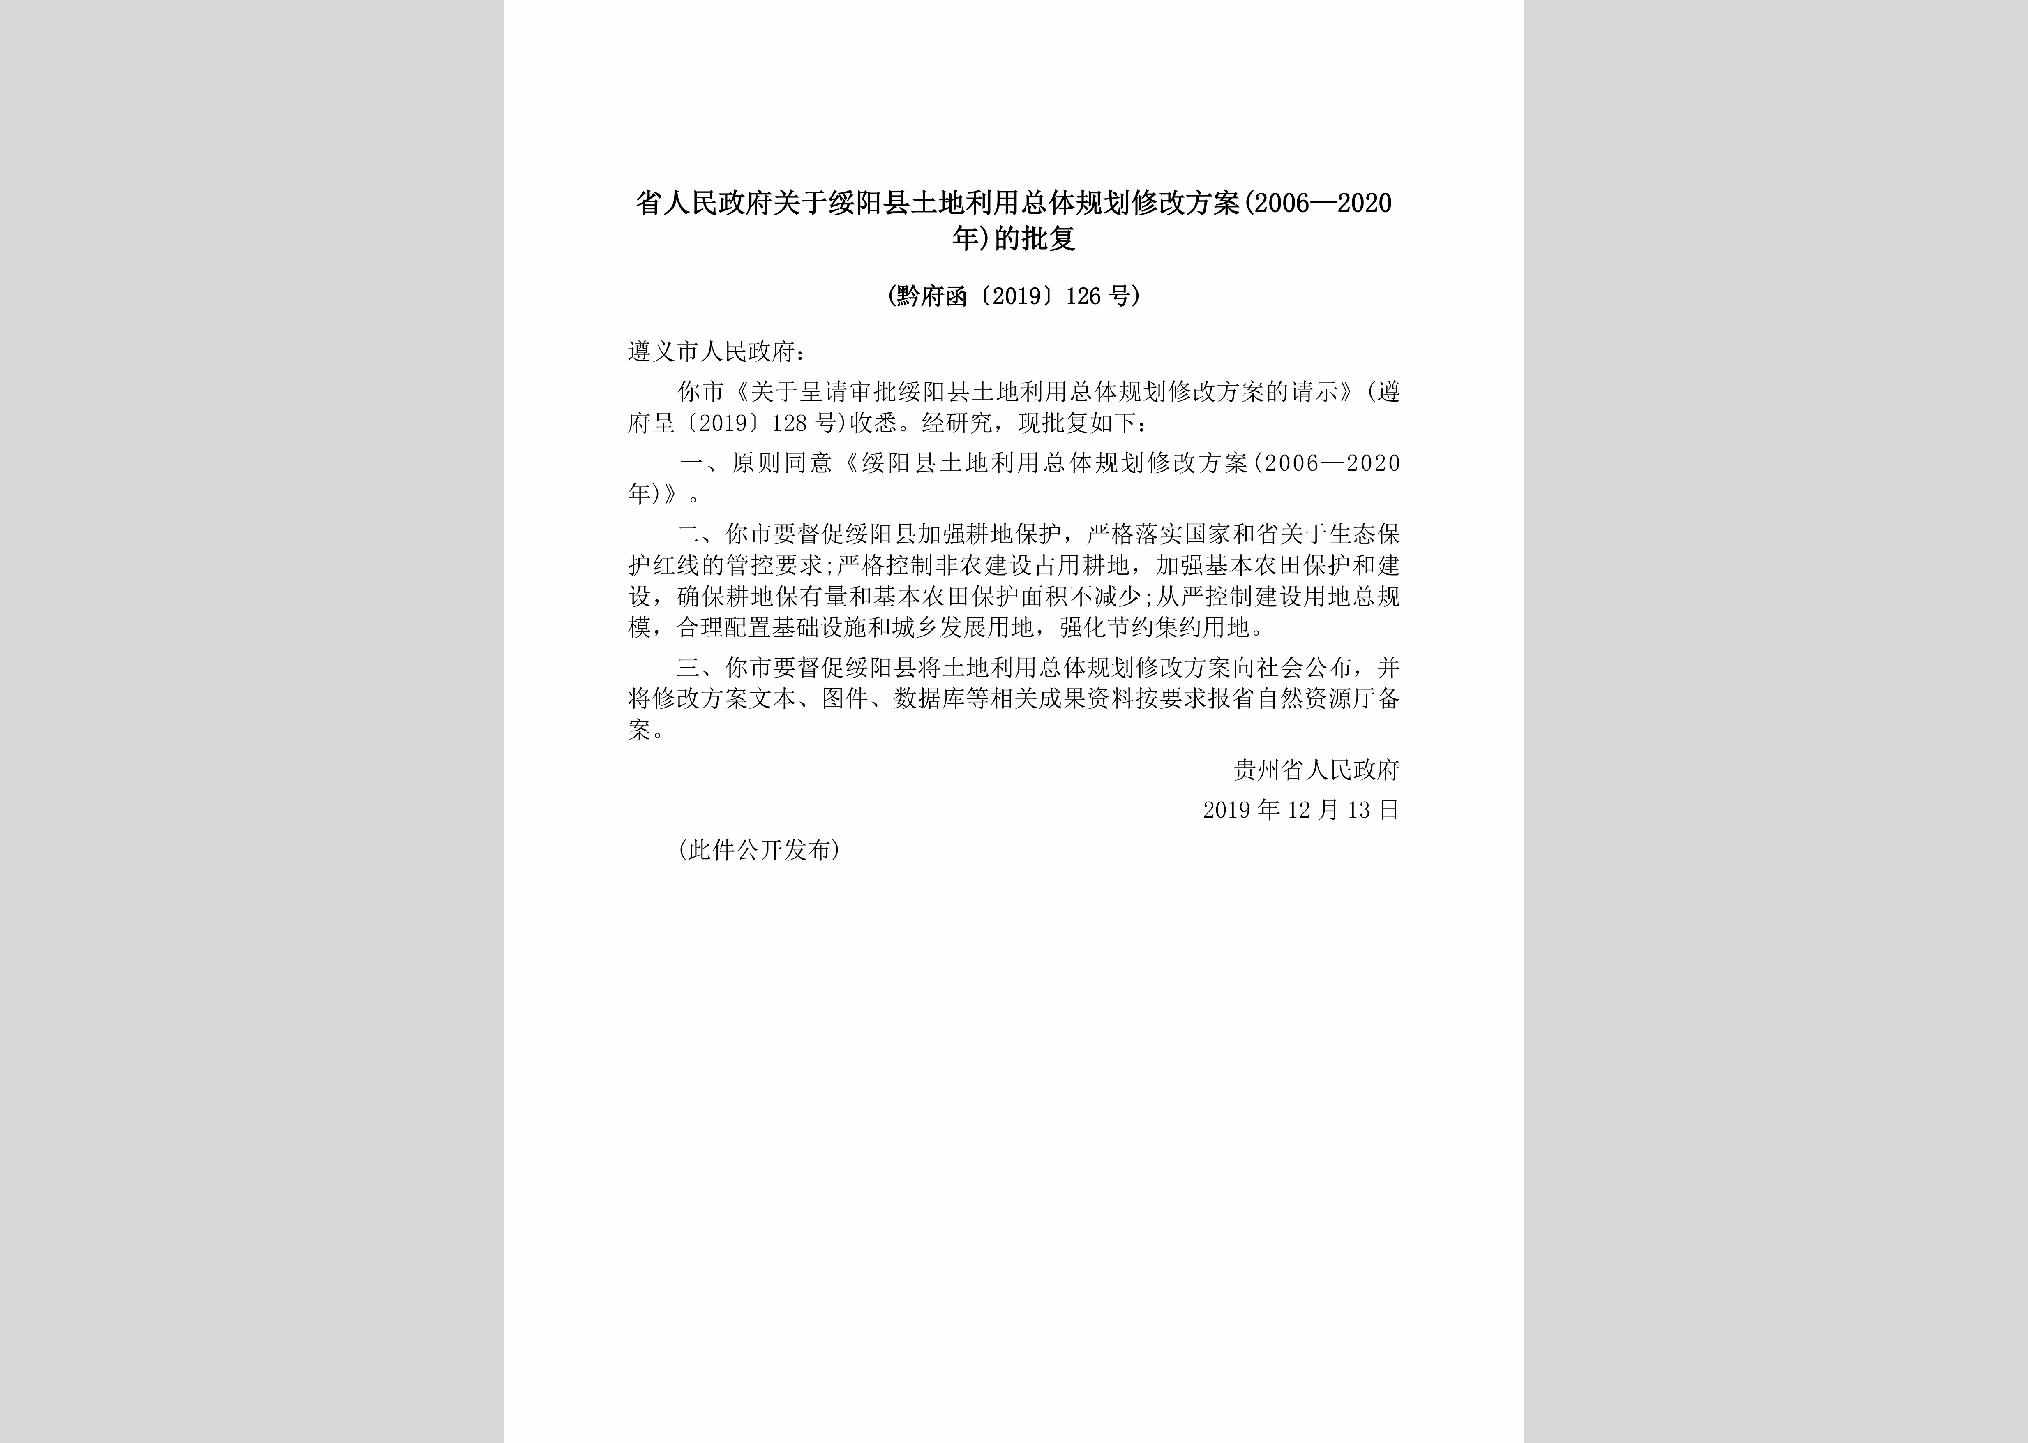 黔府函[2019]126号：省人民政府关于绥阳县土地利用总体规划修改方案(2006—2020年)的批复